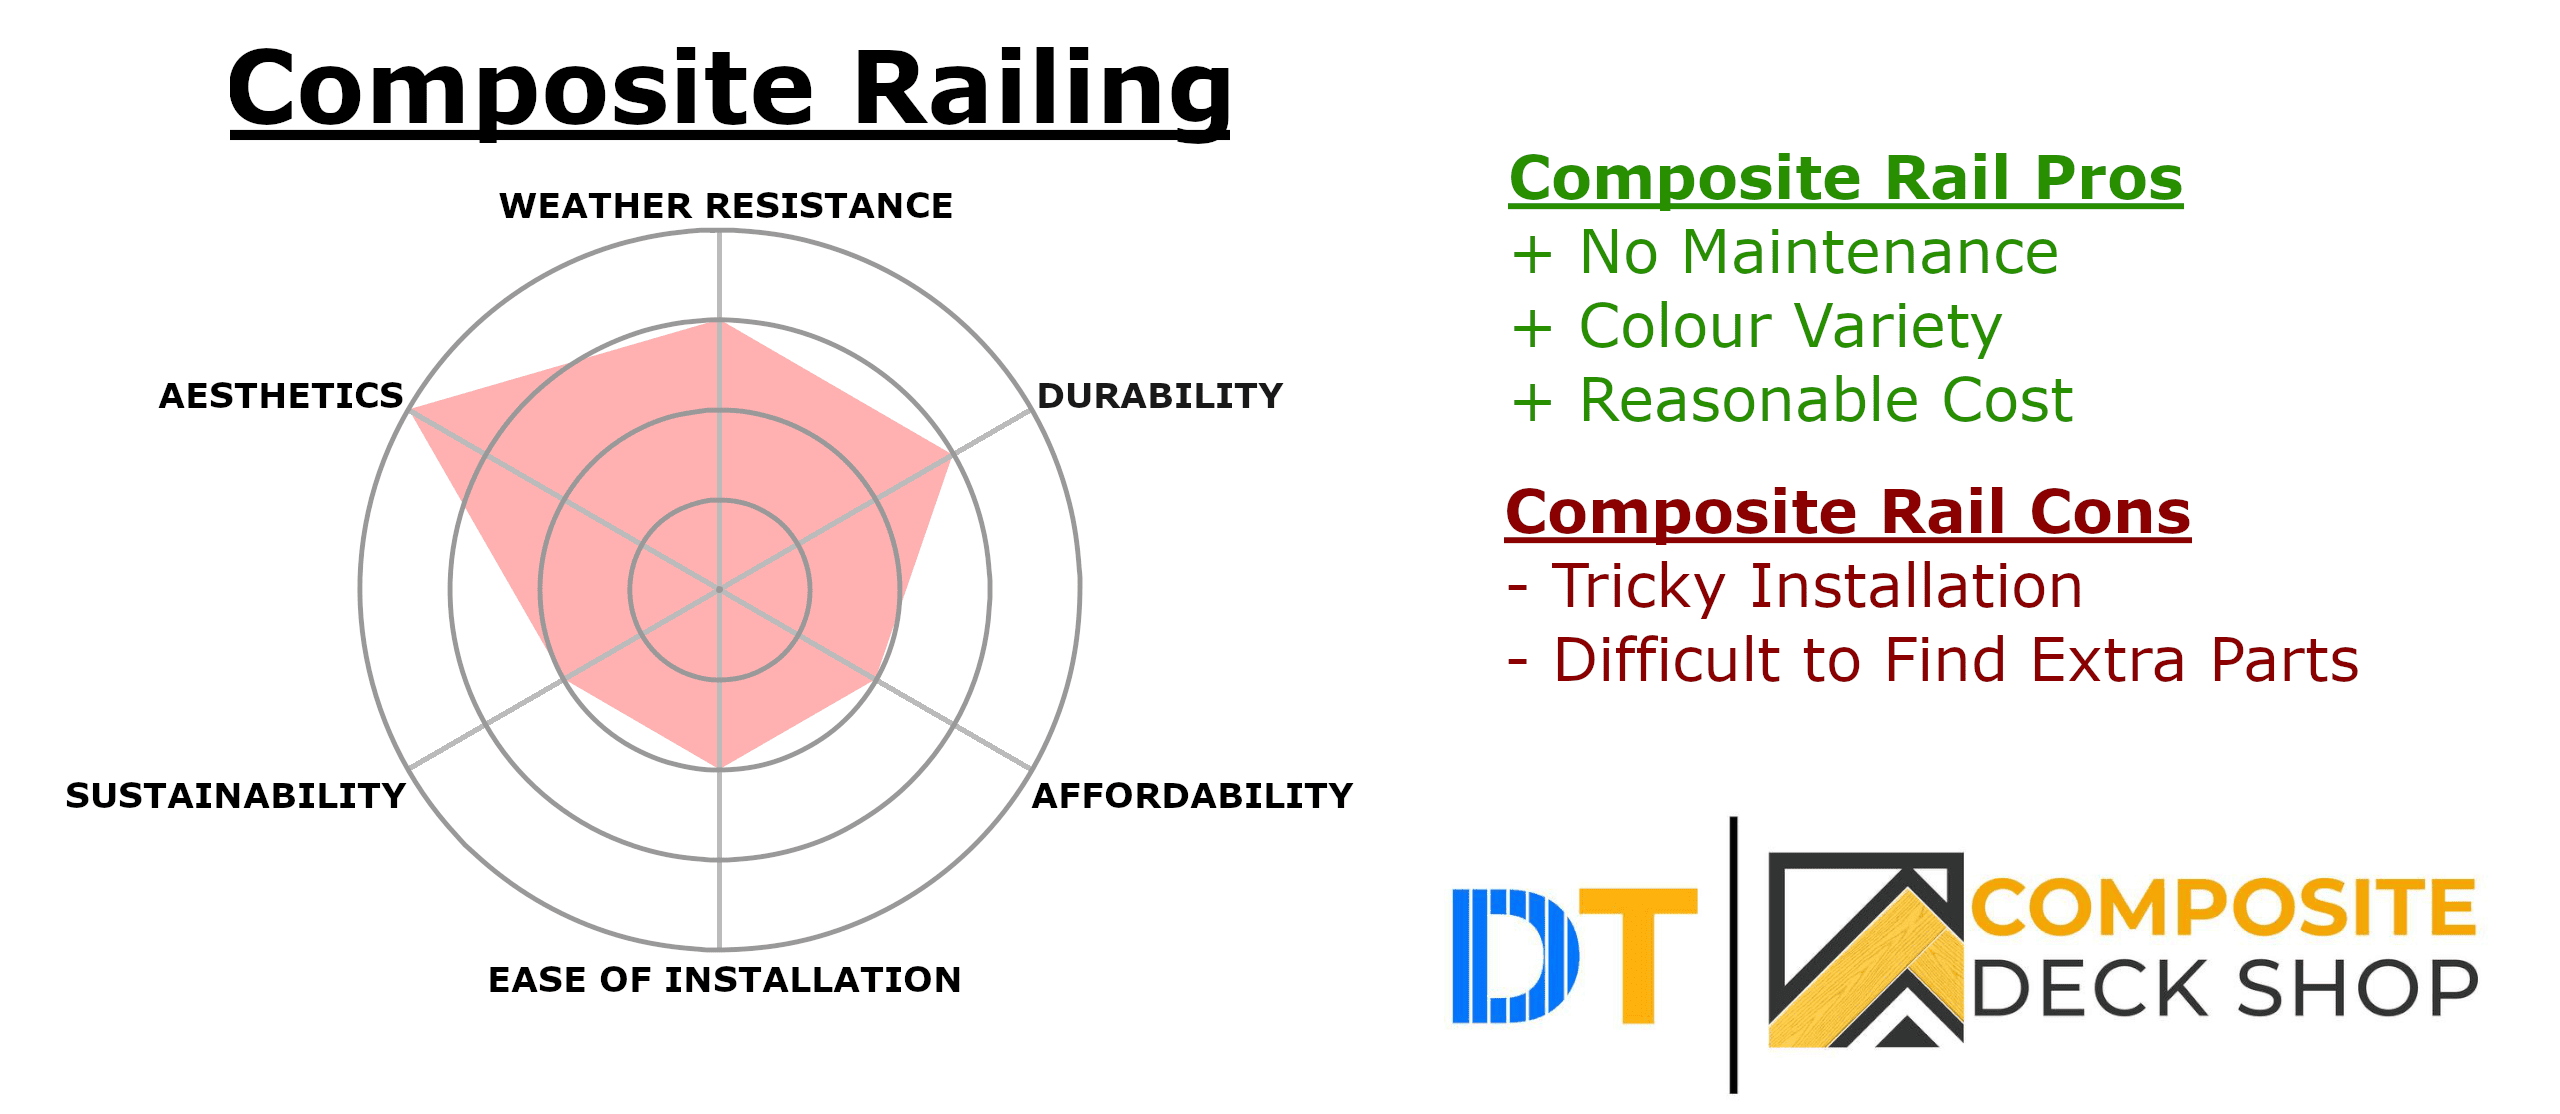 Composite Railing